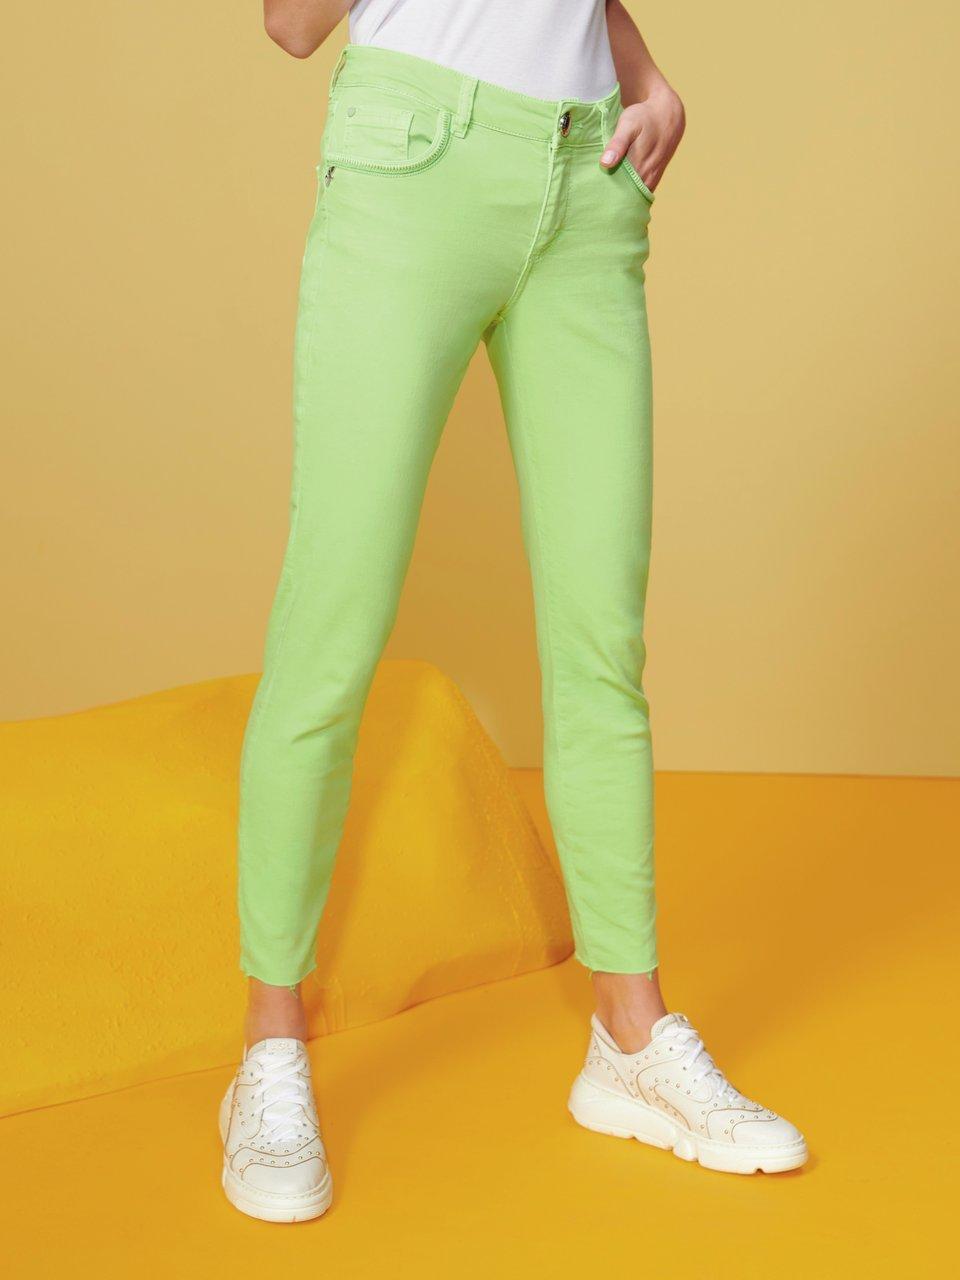 Enkellange broek in five-pocketsmodel Van Mos Mosh groen